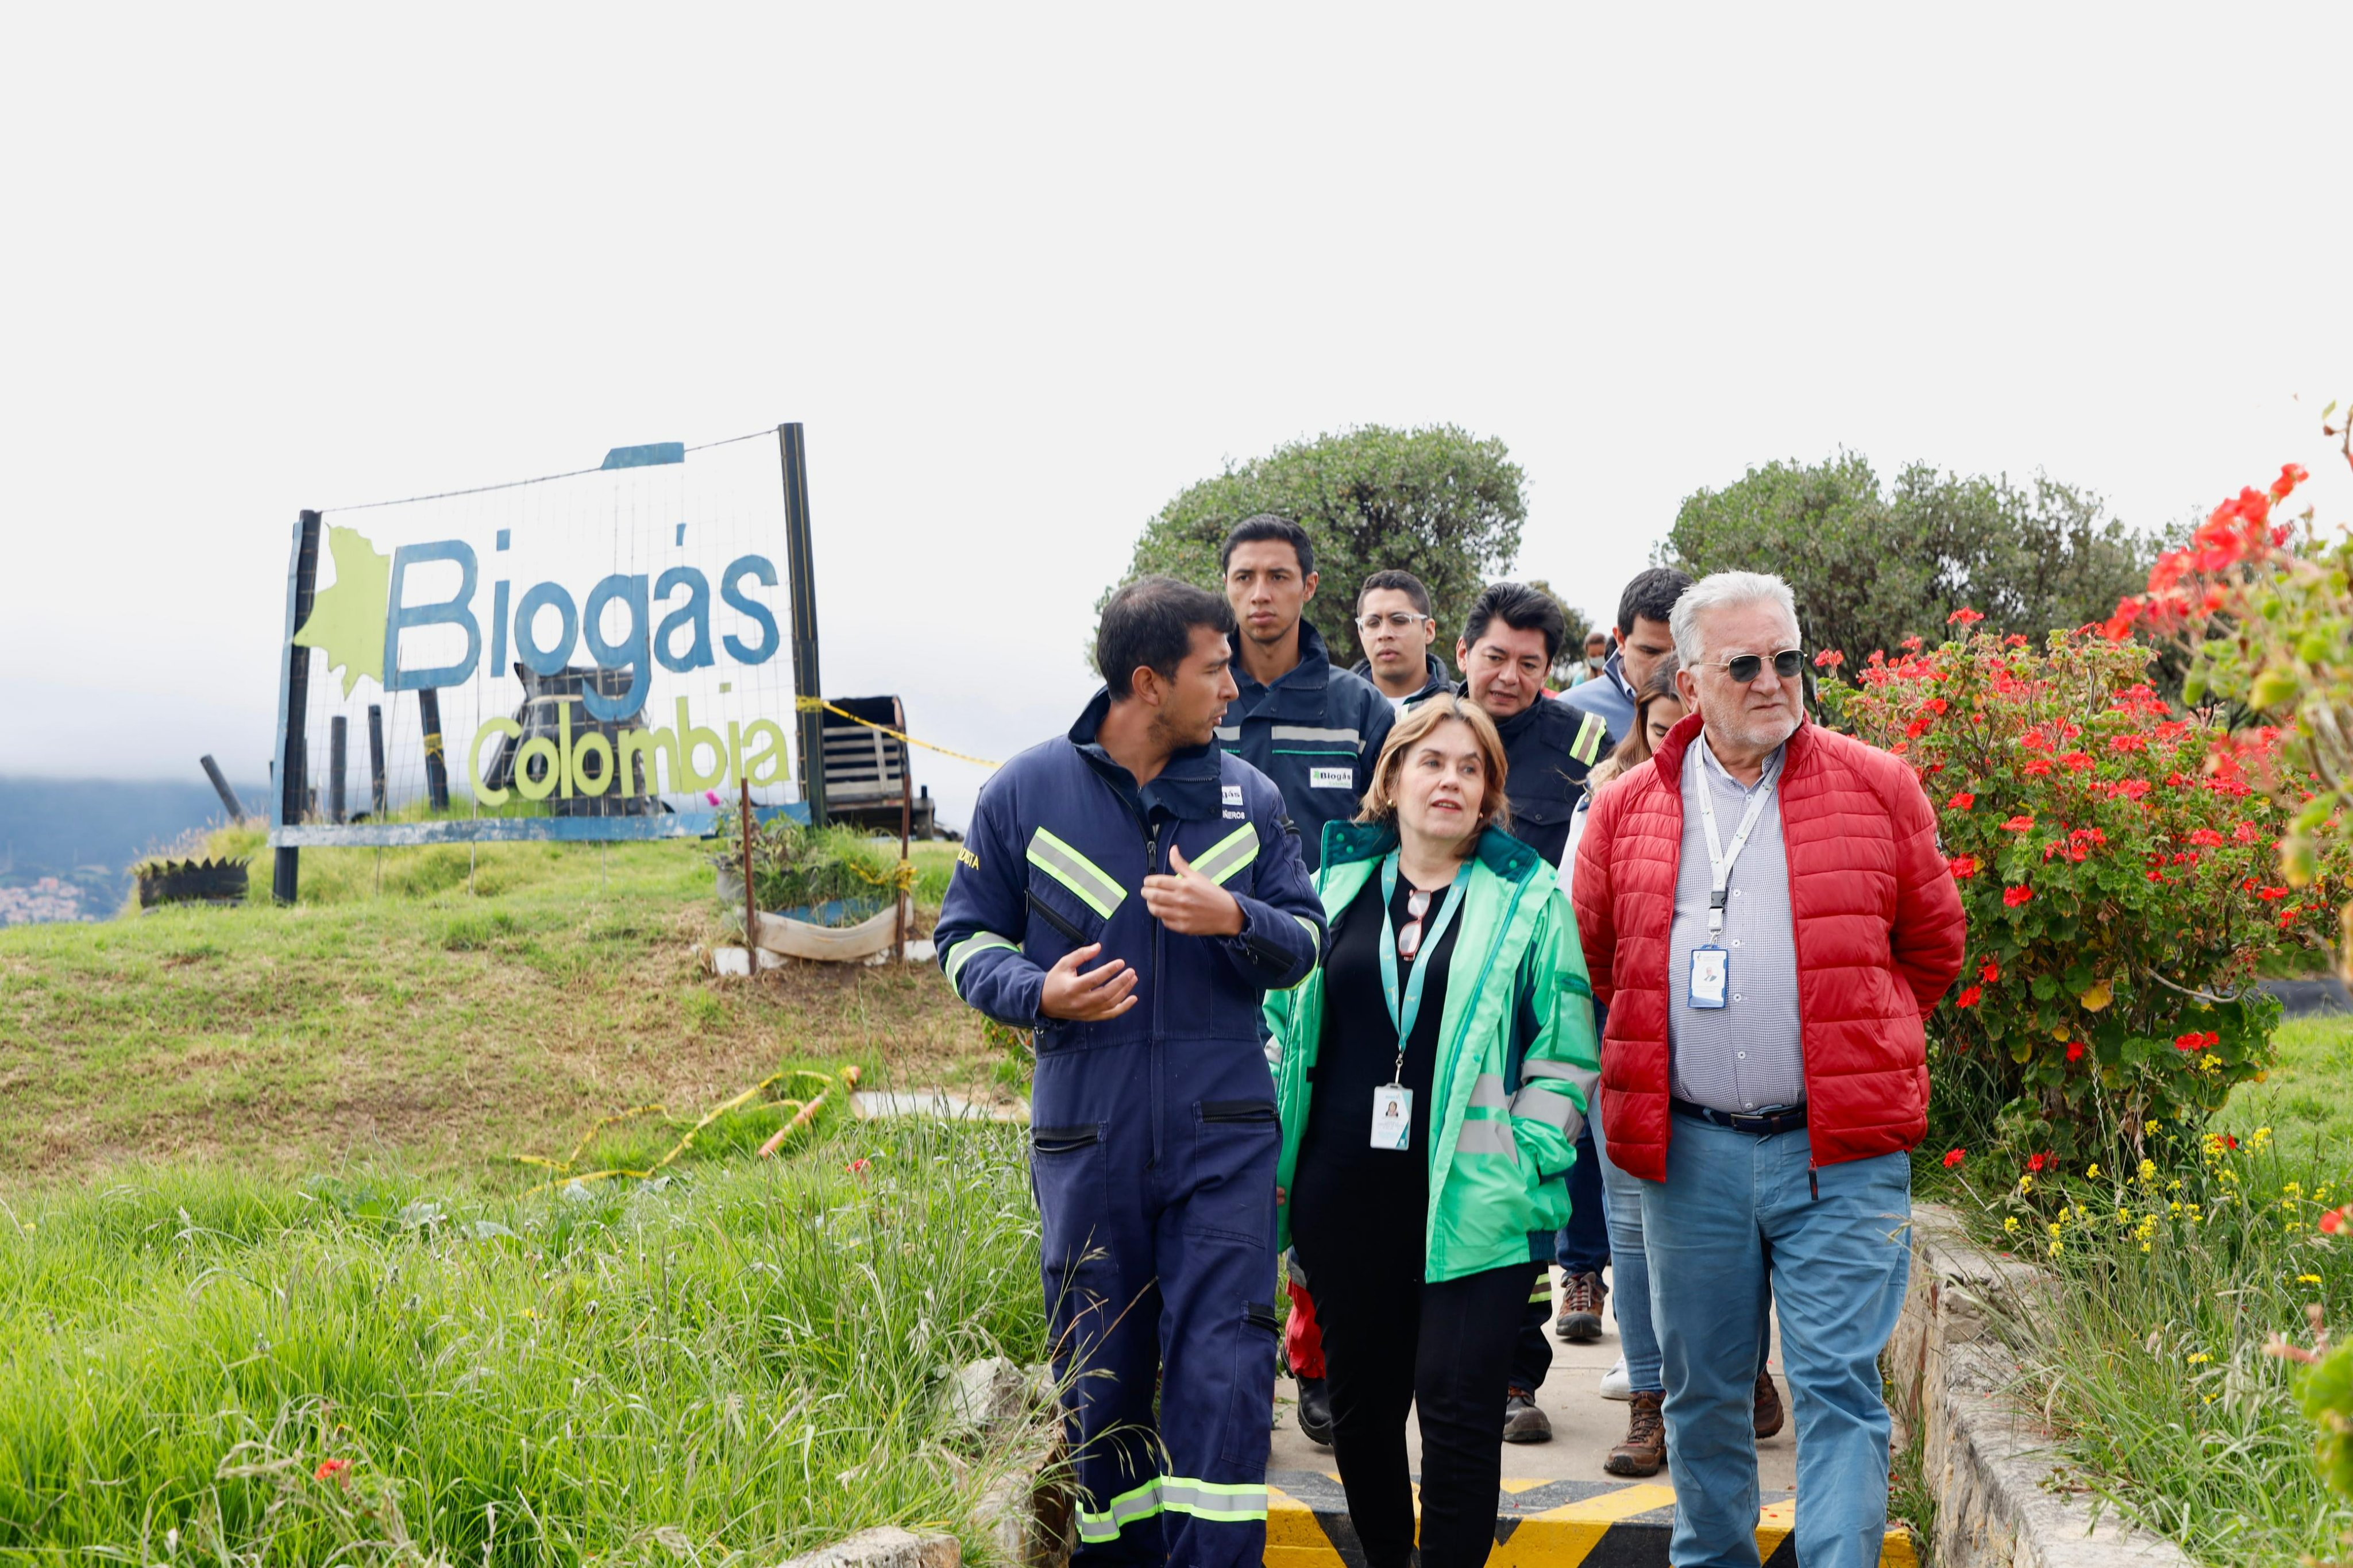 El superintendente, Dagoberto Quiroga y la directora de la UAESP, Consuelo Ordóñez, destacaron el proyecto de biogás del Parque de Innovación Doña Juana.